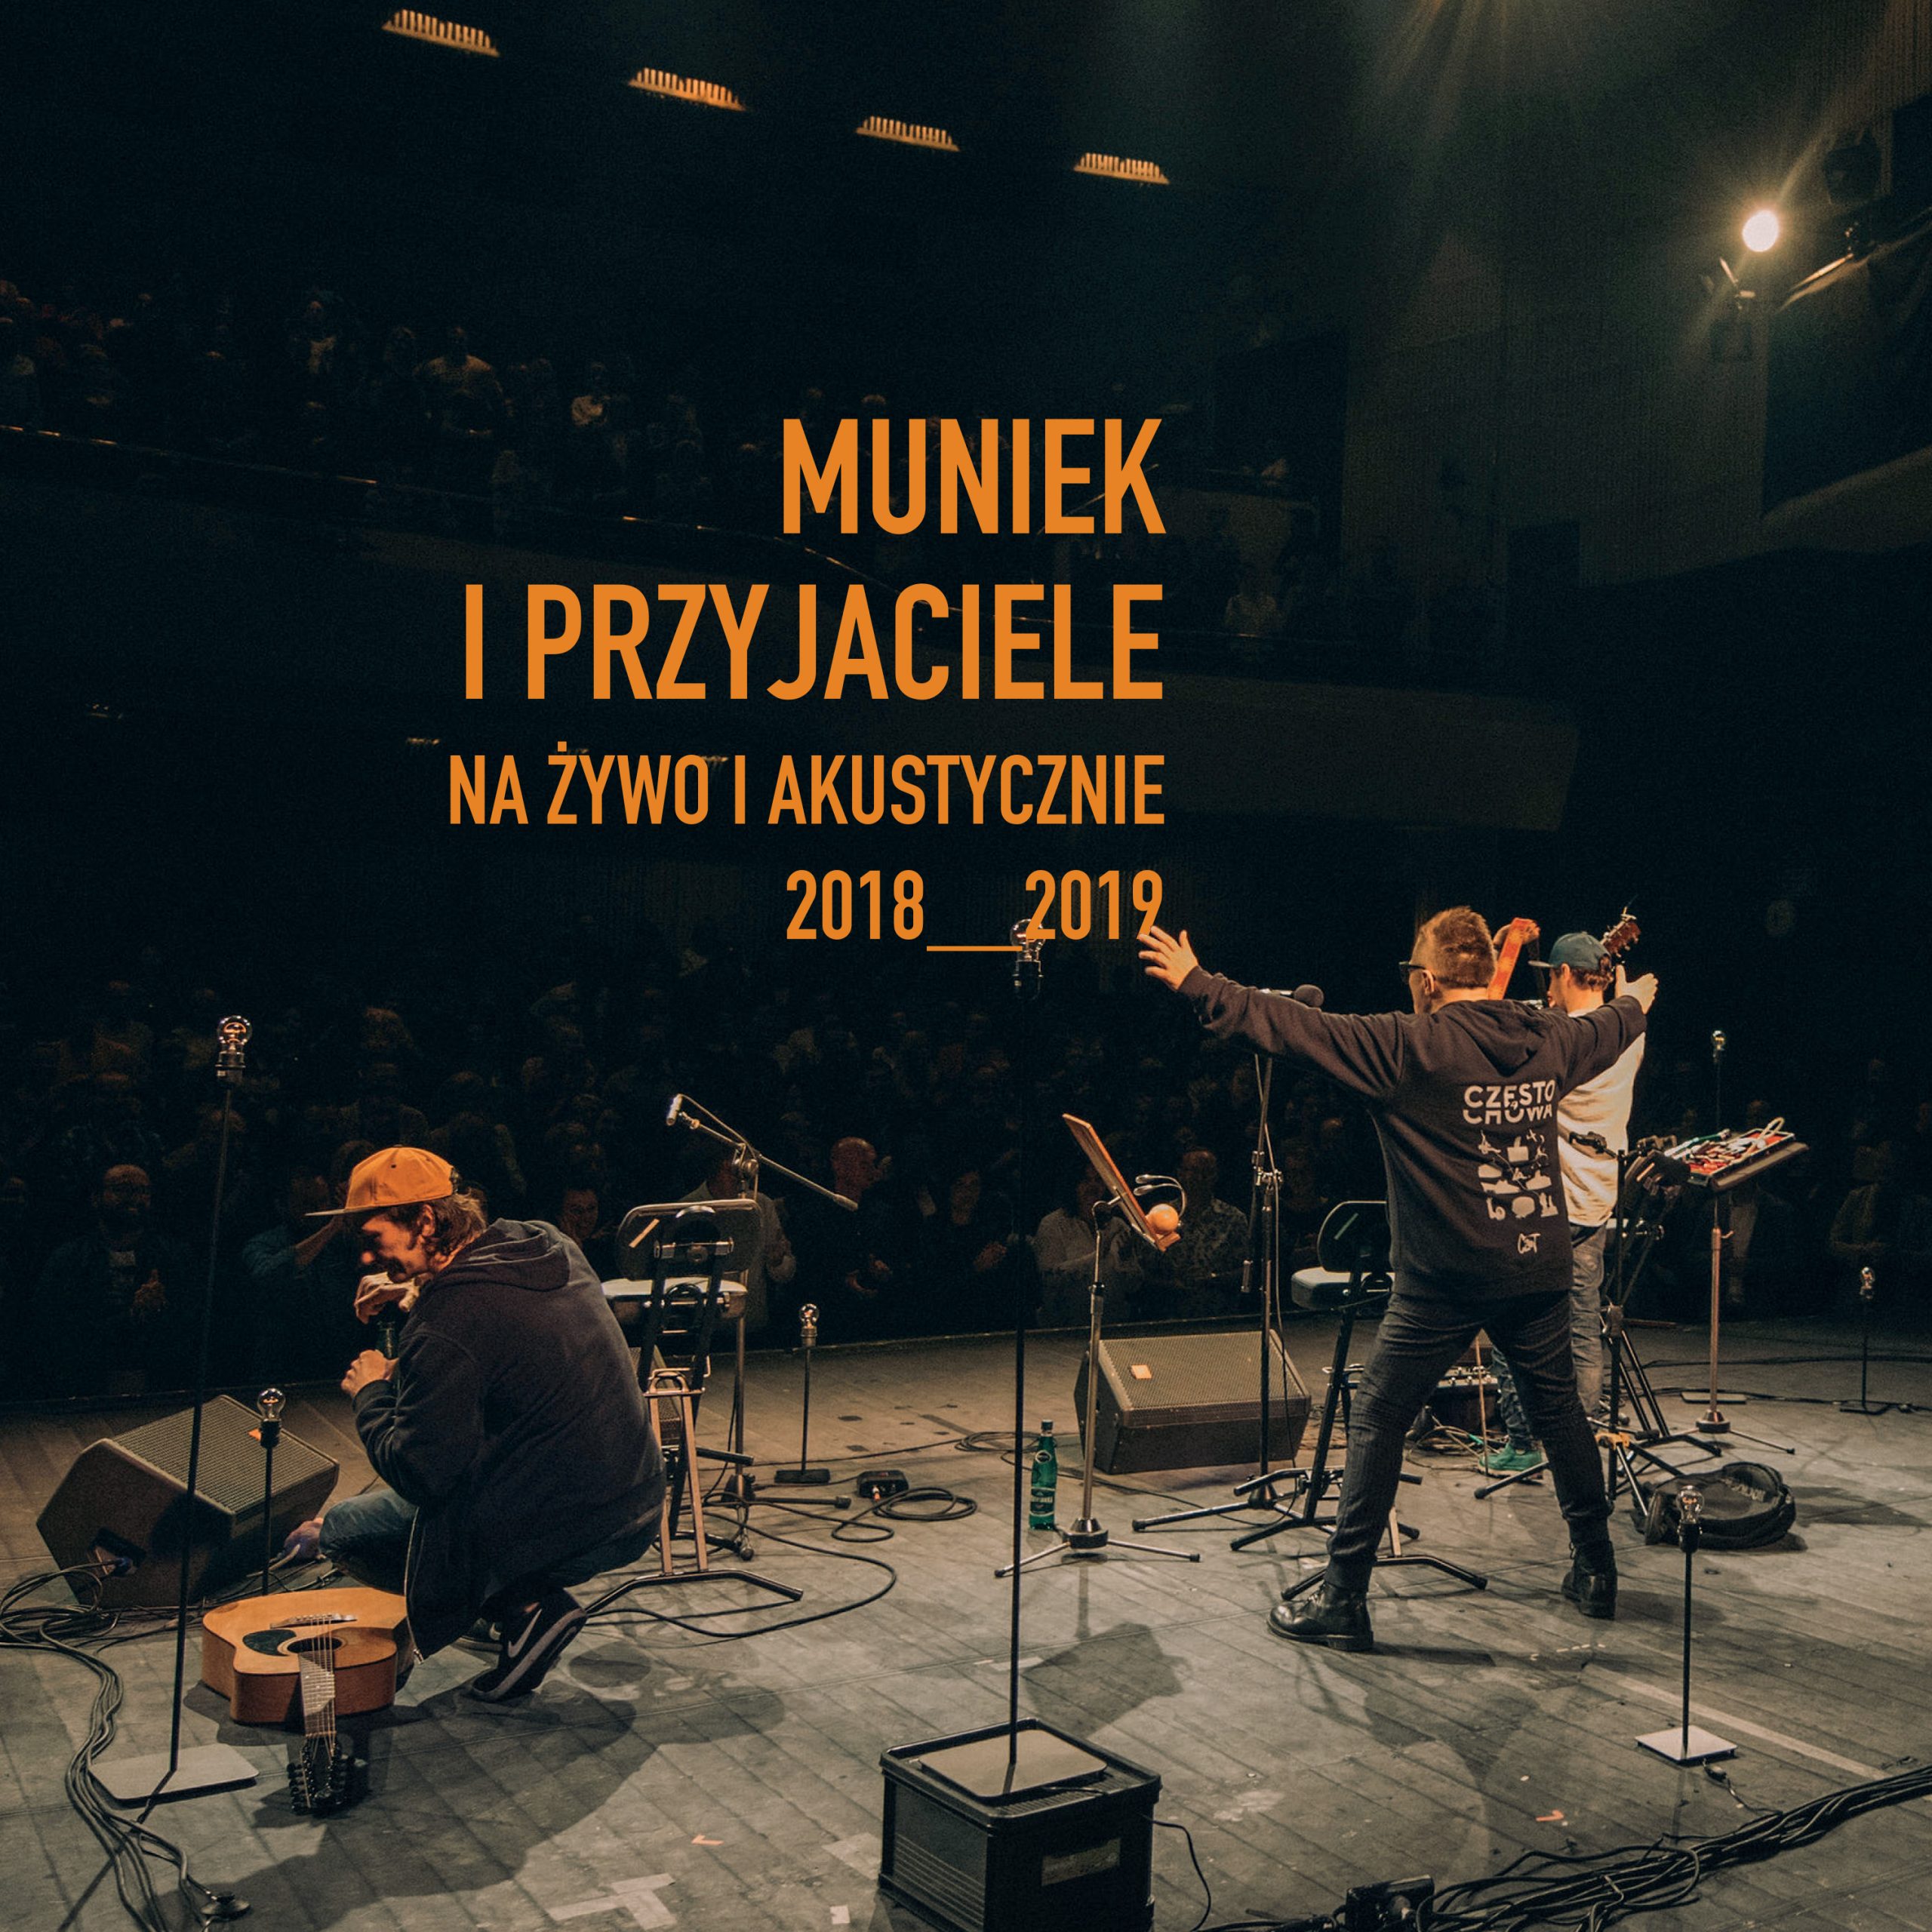 Nowa płyta Muńka Staszczyka. "Muniek i Przyjaciele. Na żywo i akustycznie 2018-2019" 5